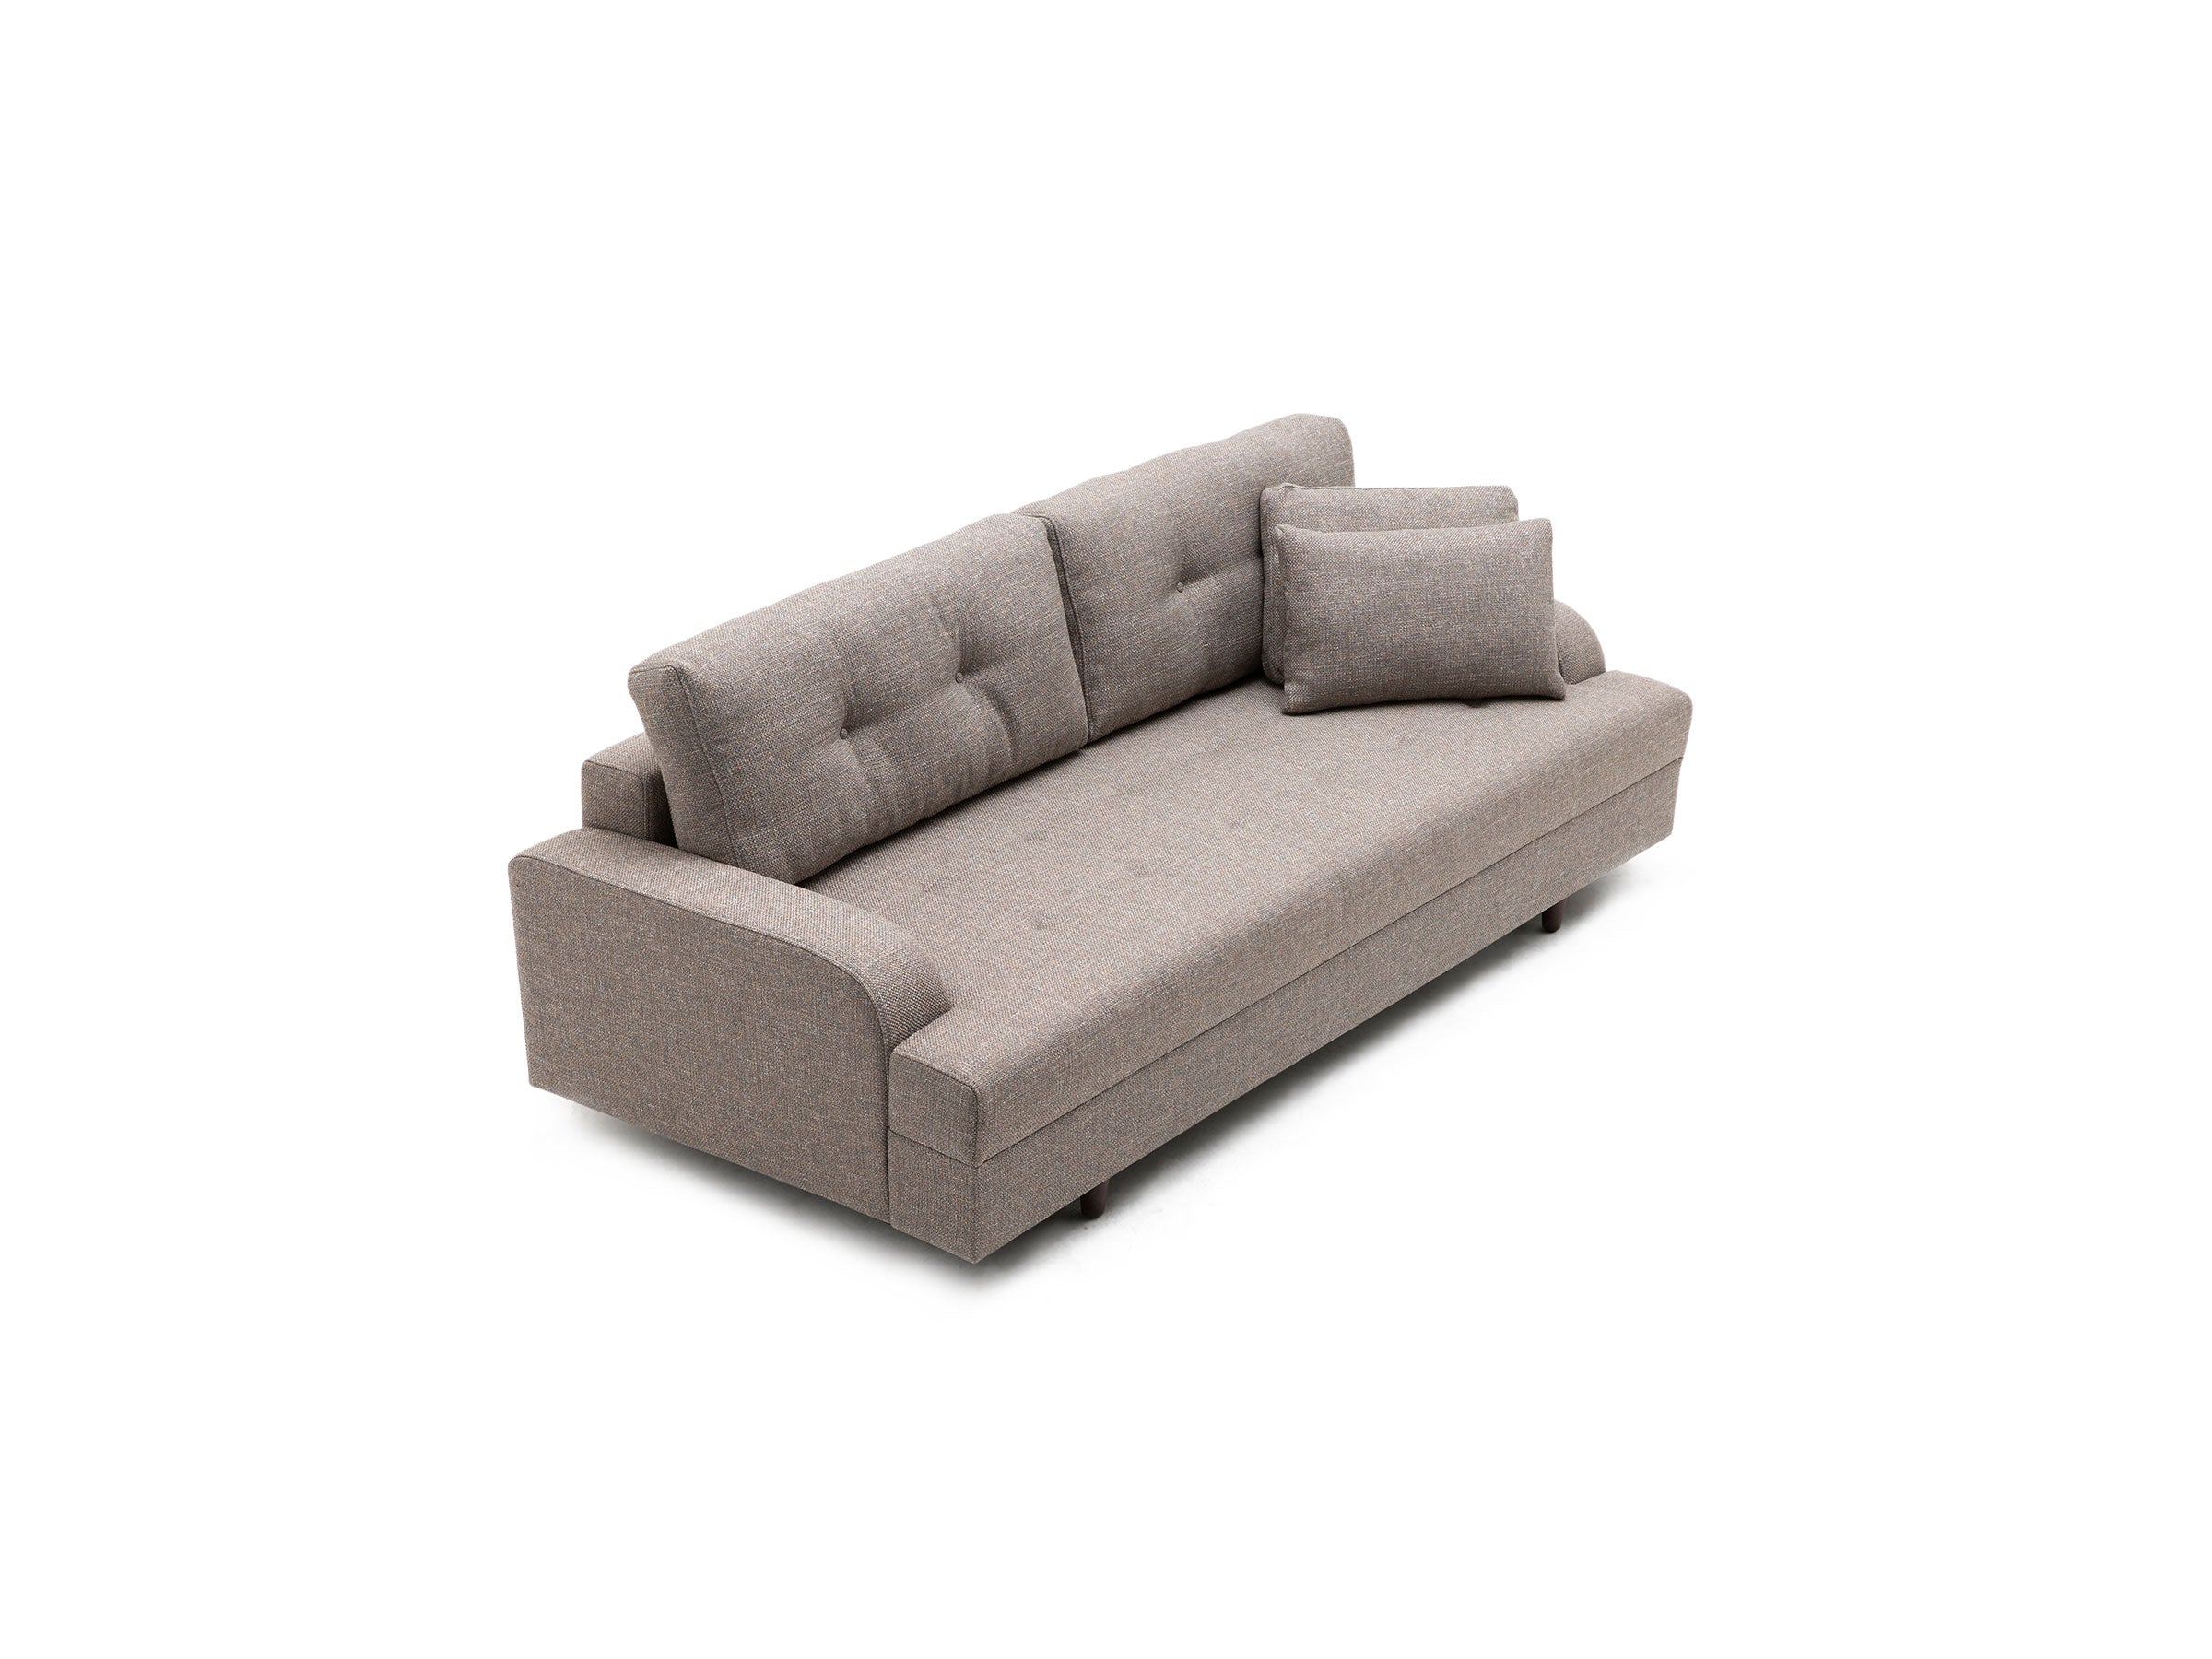 Biblio 3 Seater Sofa Bed | Lazzoni Furniture